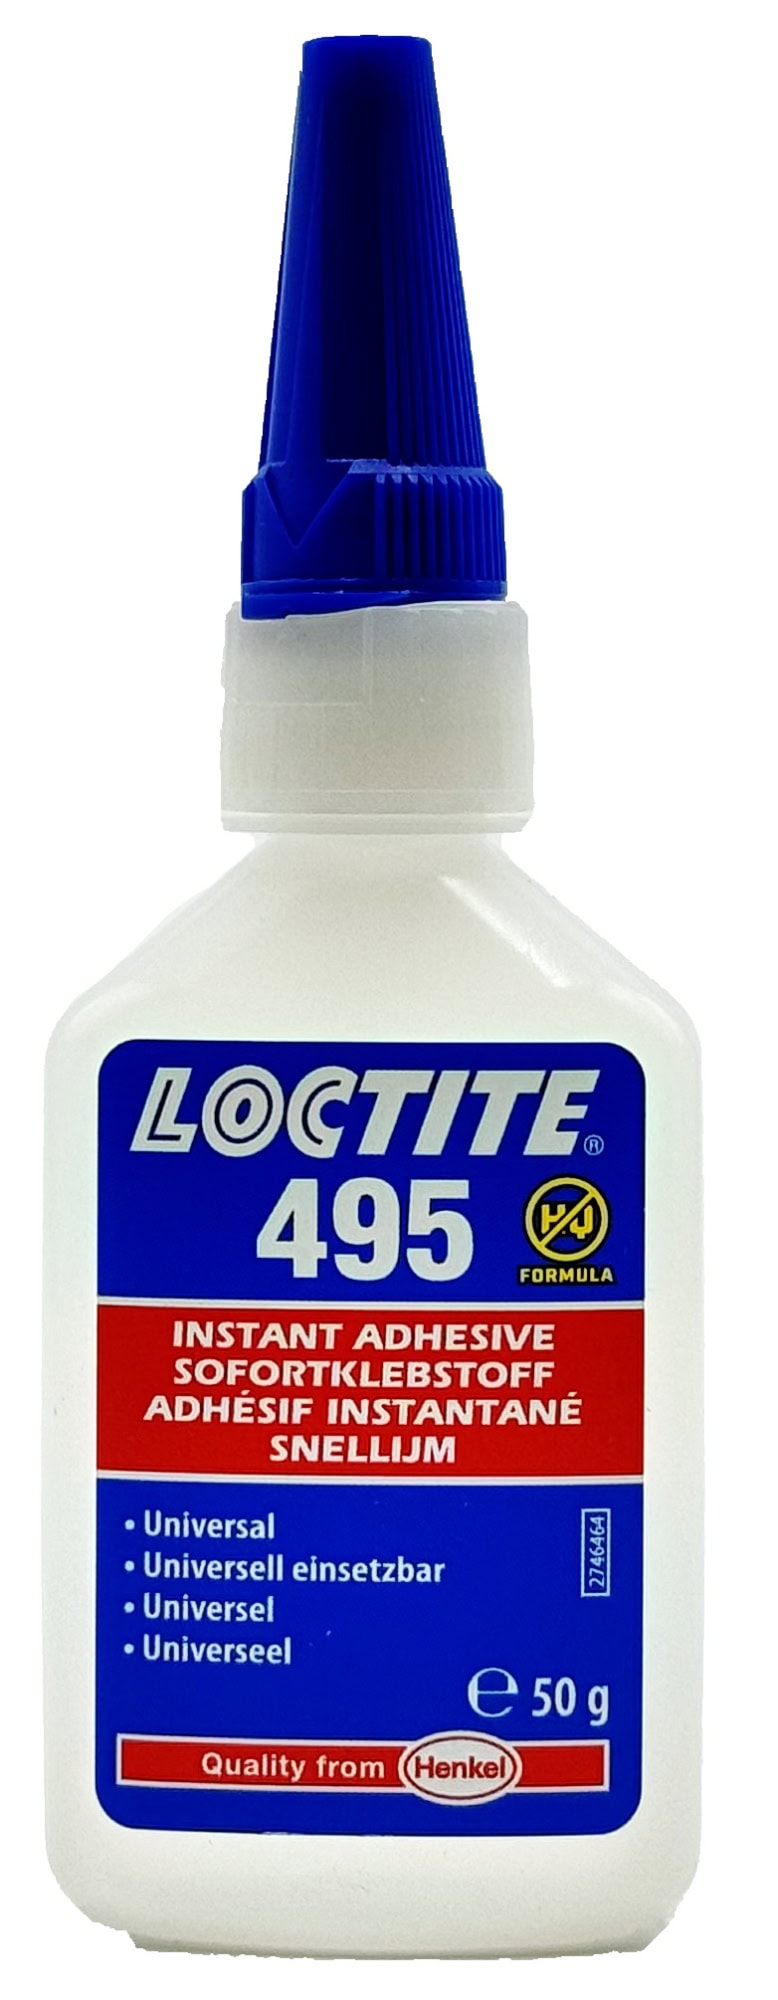 Henkel™ Loctite® Sofortklebstoff 495, 50 g, Transparent, 234121, Universell einsetzbar